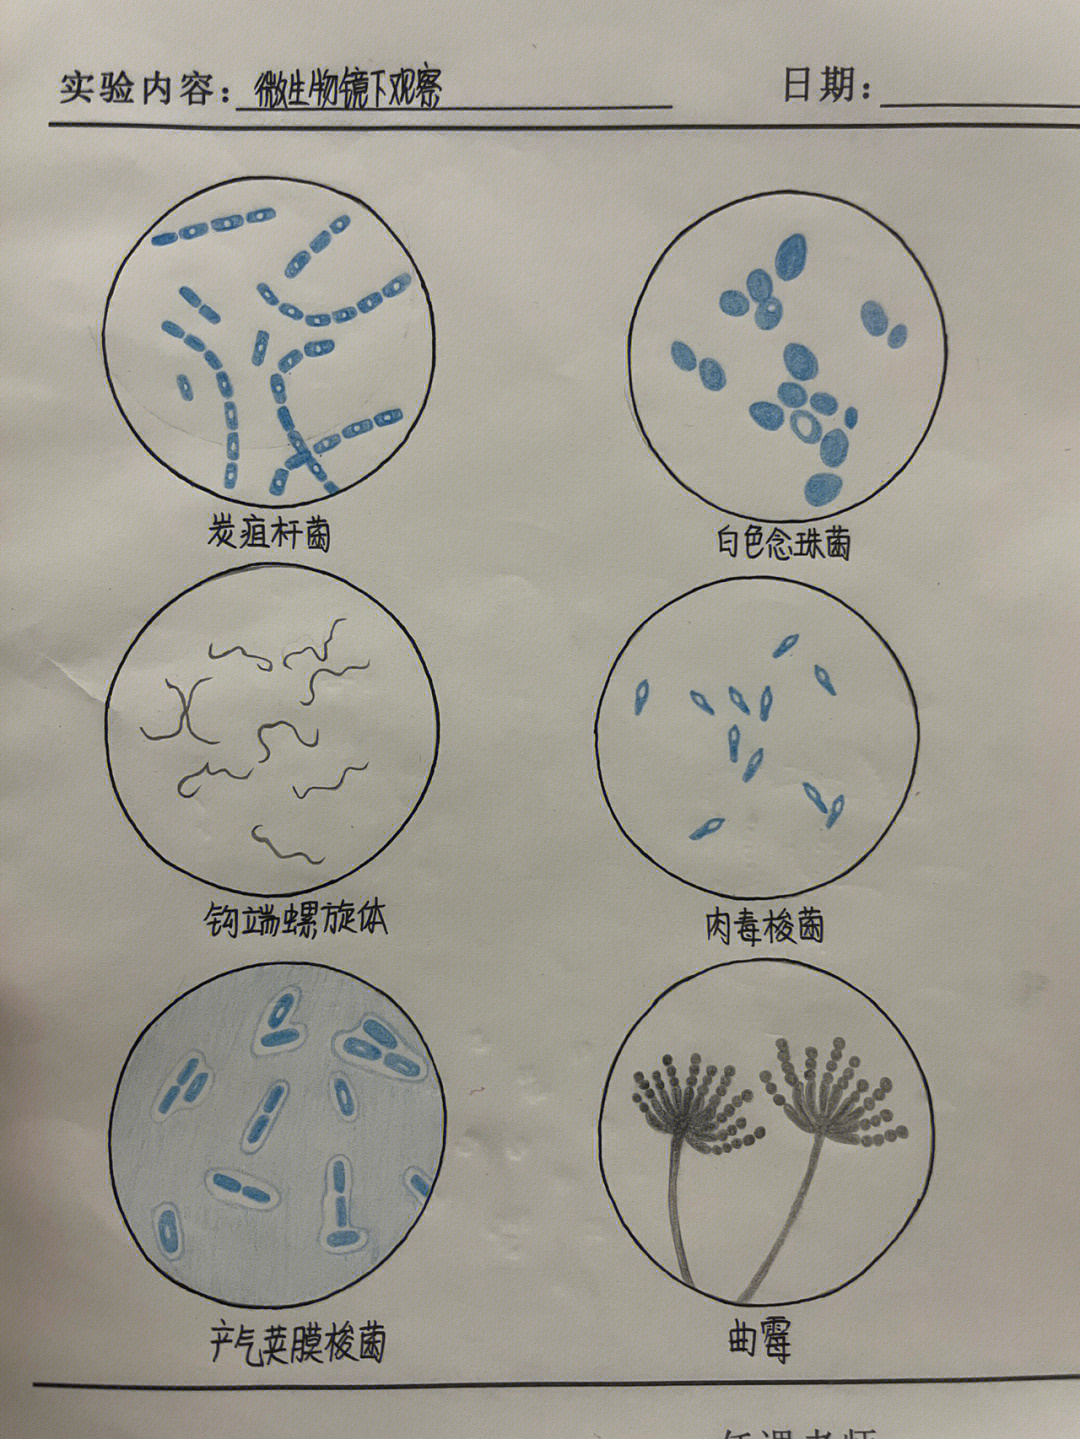 医学微生物红蓝铅笔手绘图